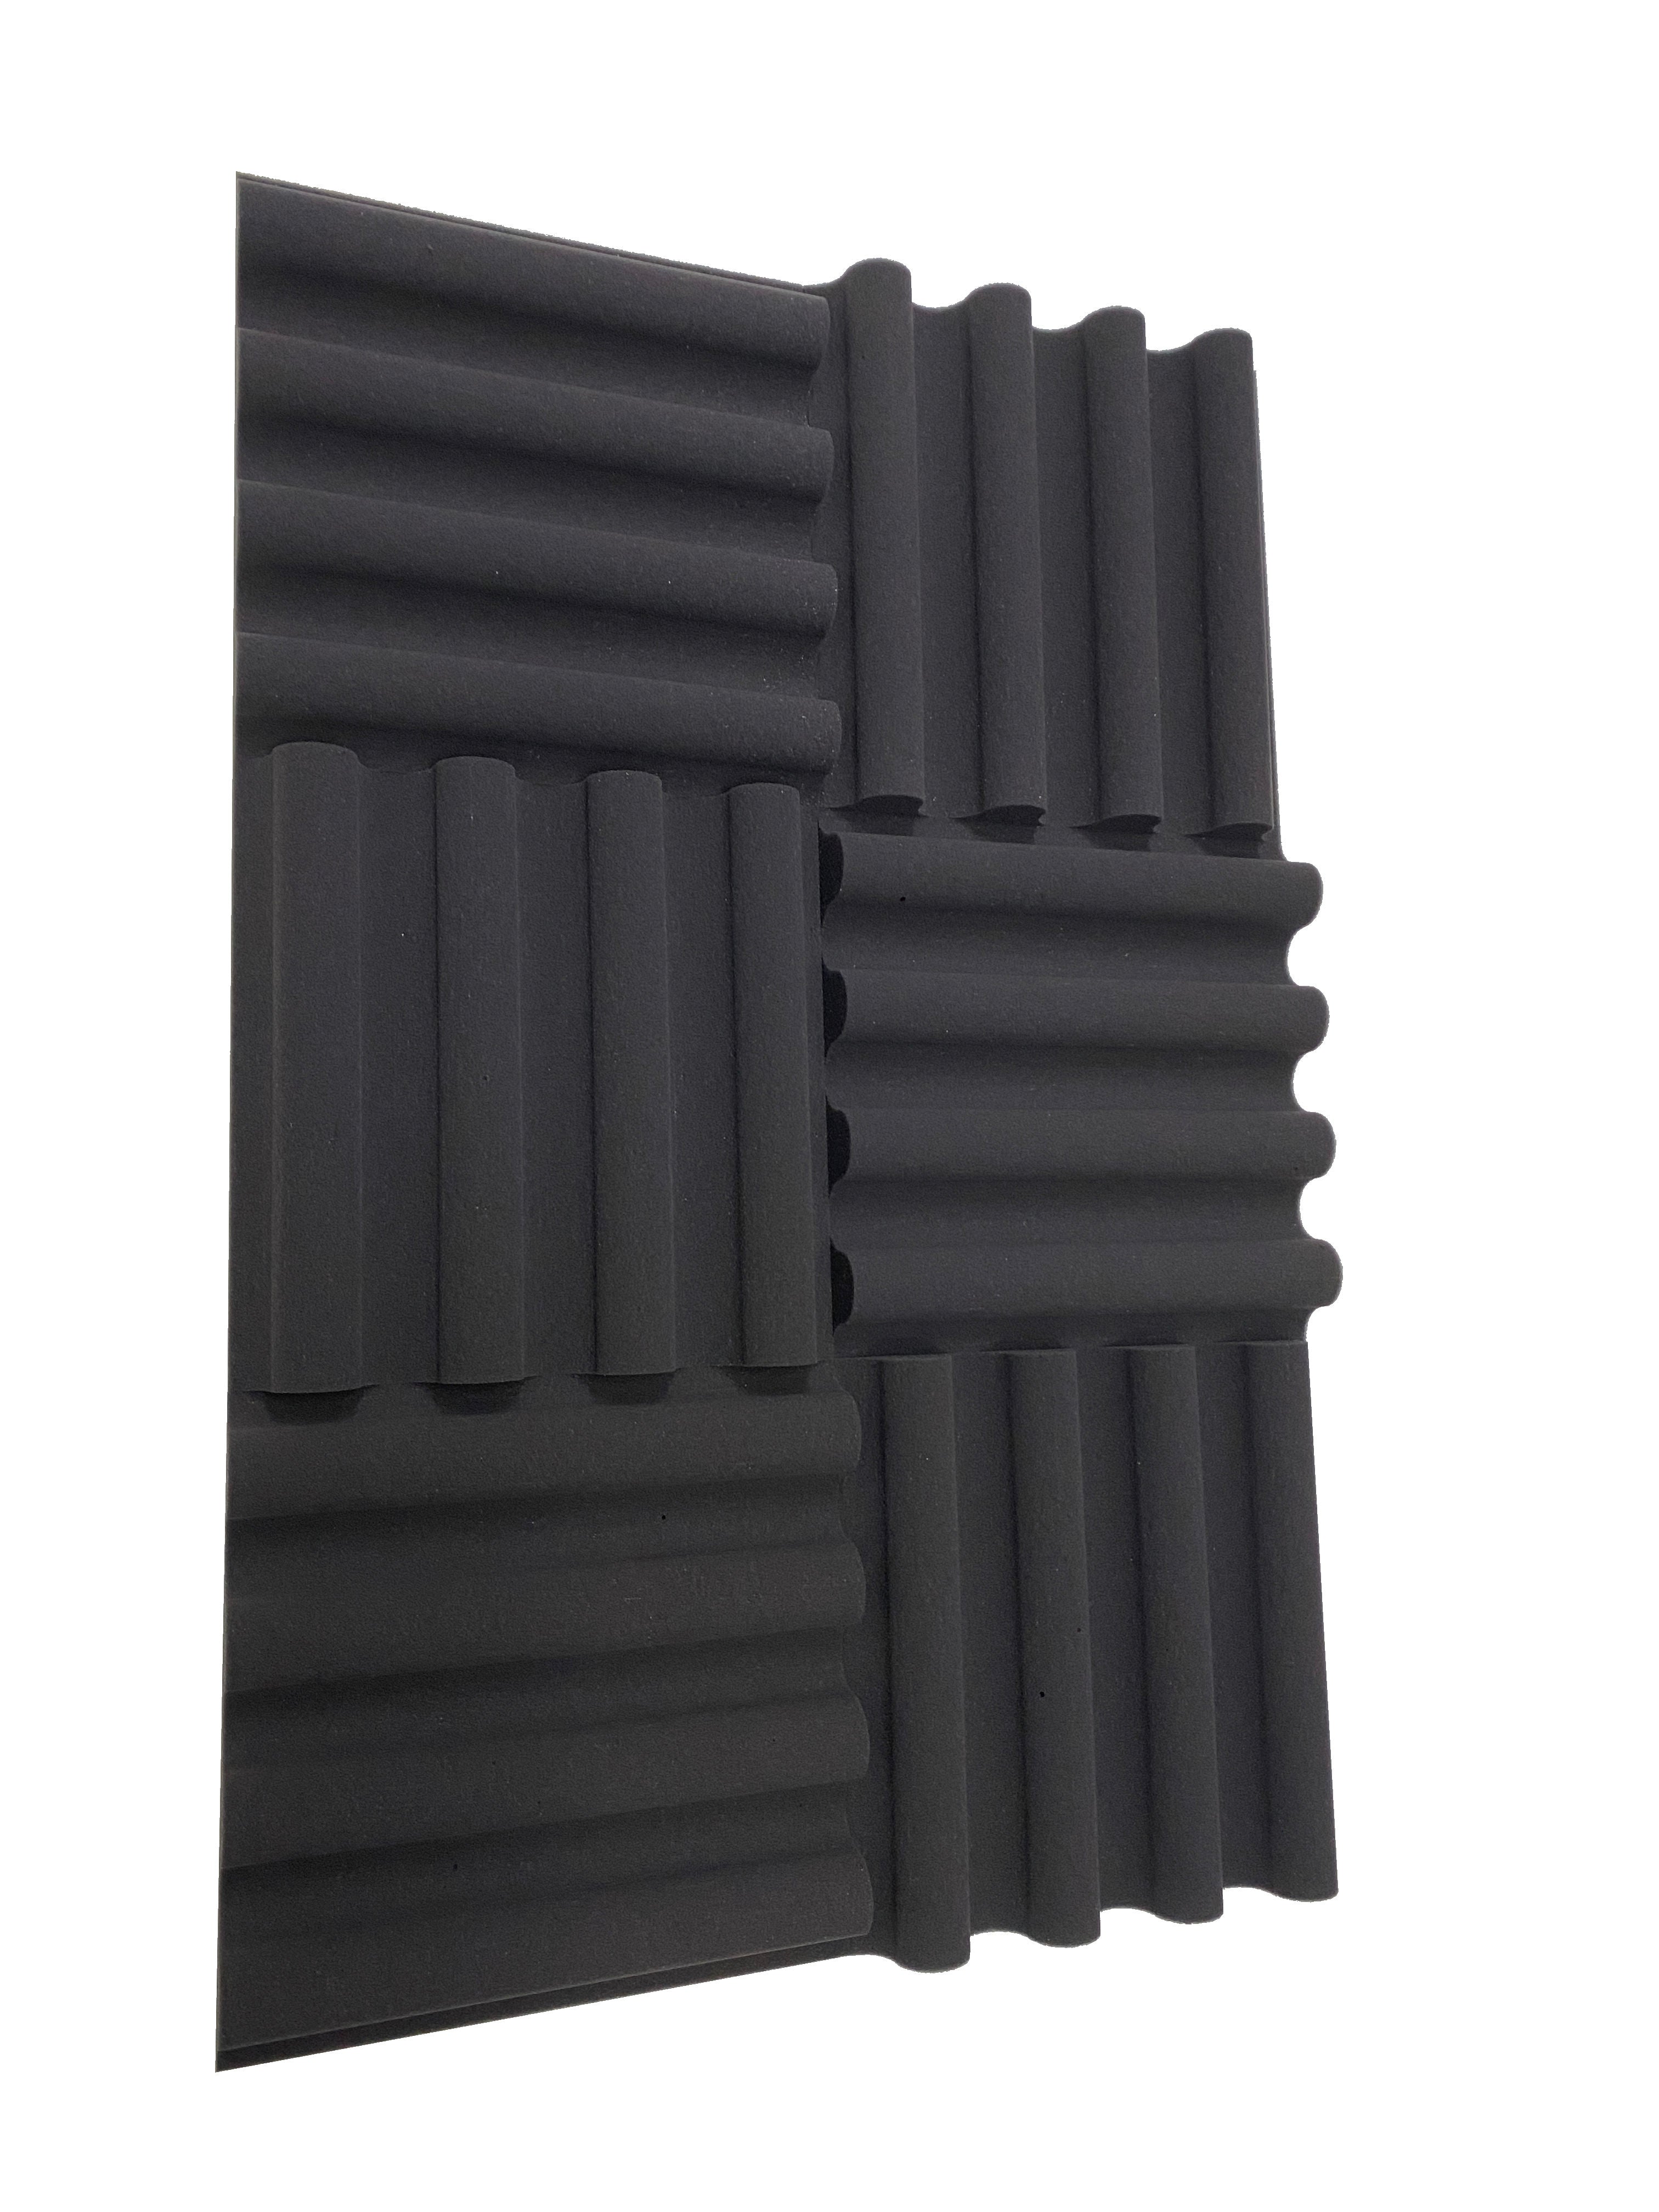 Kaufen dunkelgrau Mini Wave 12&quot; Acoustic Studio Foam Tile Pack - 12 Tiles, 1.1qm Coverage